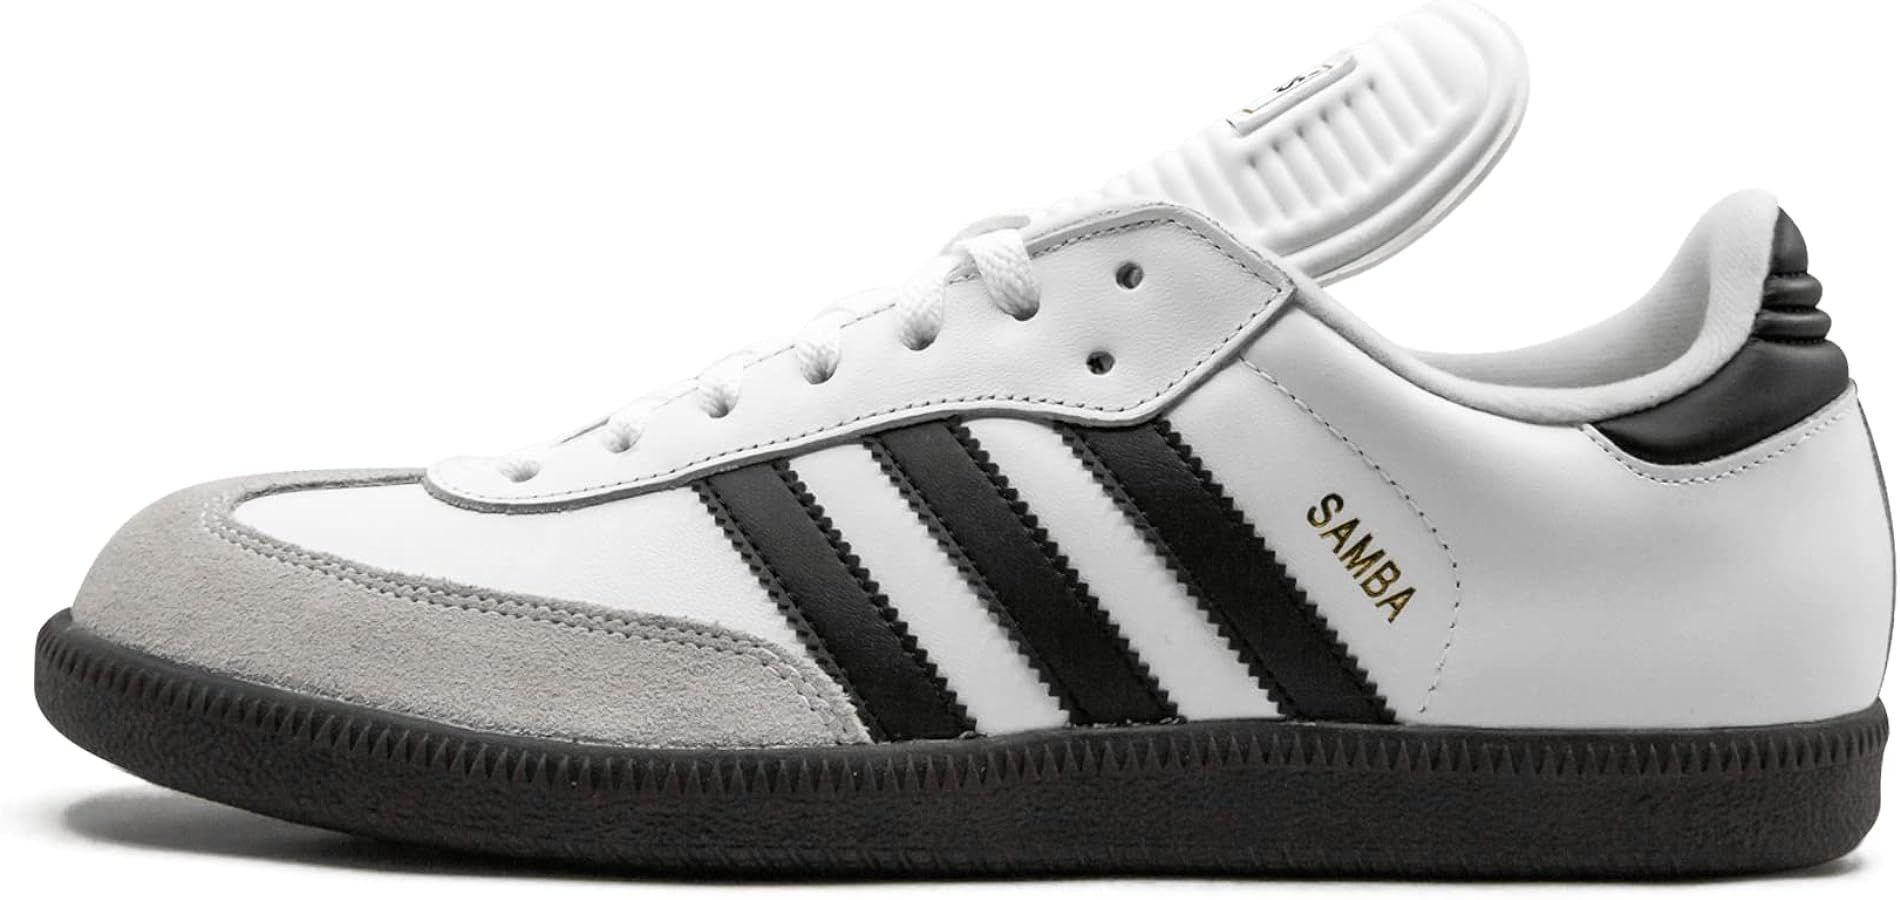 adidas mens Samba Classic Soccer Shoe, White/Black/White, 11.5 US | Amazon (US)